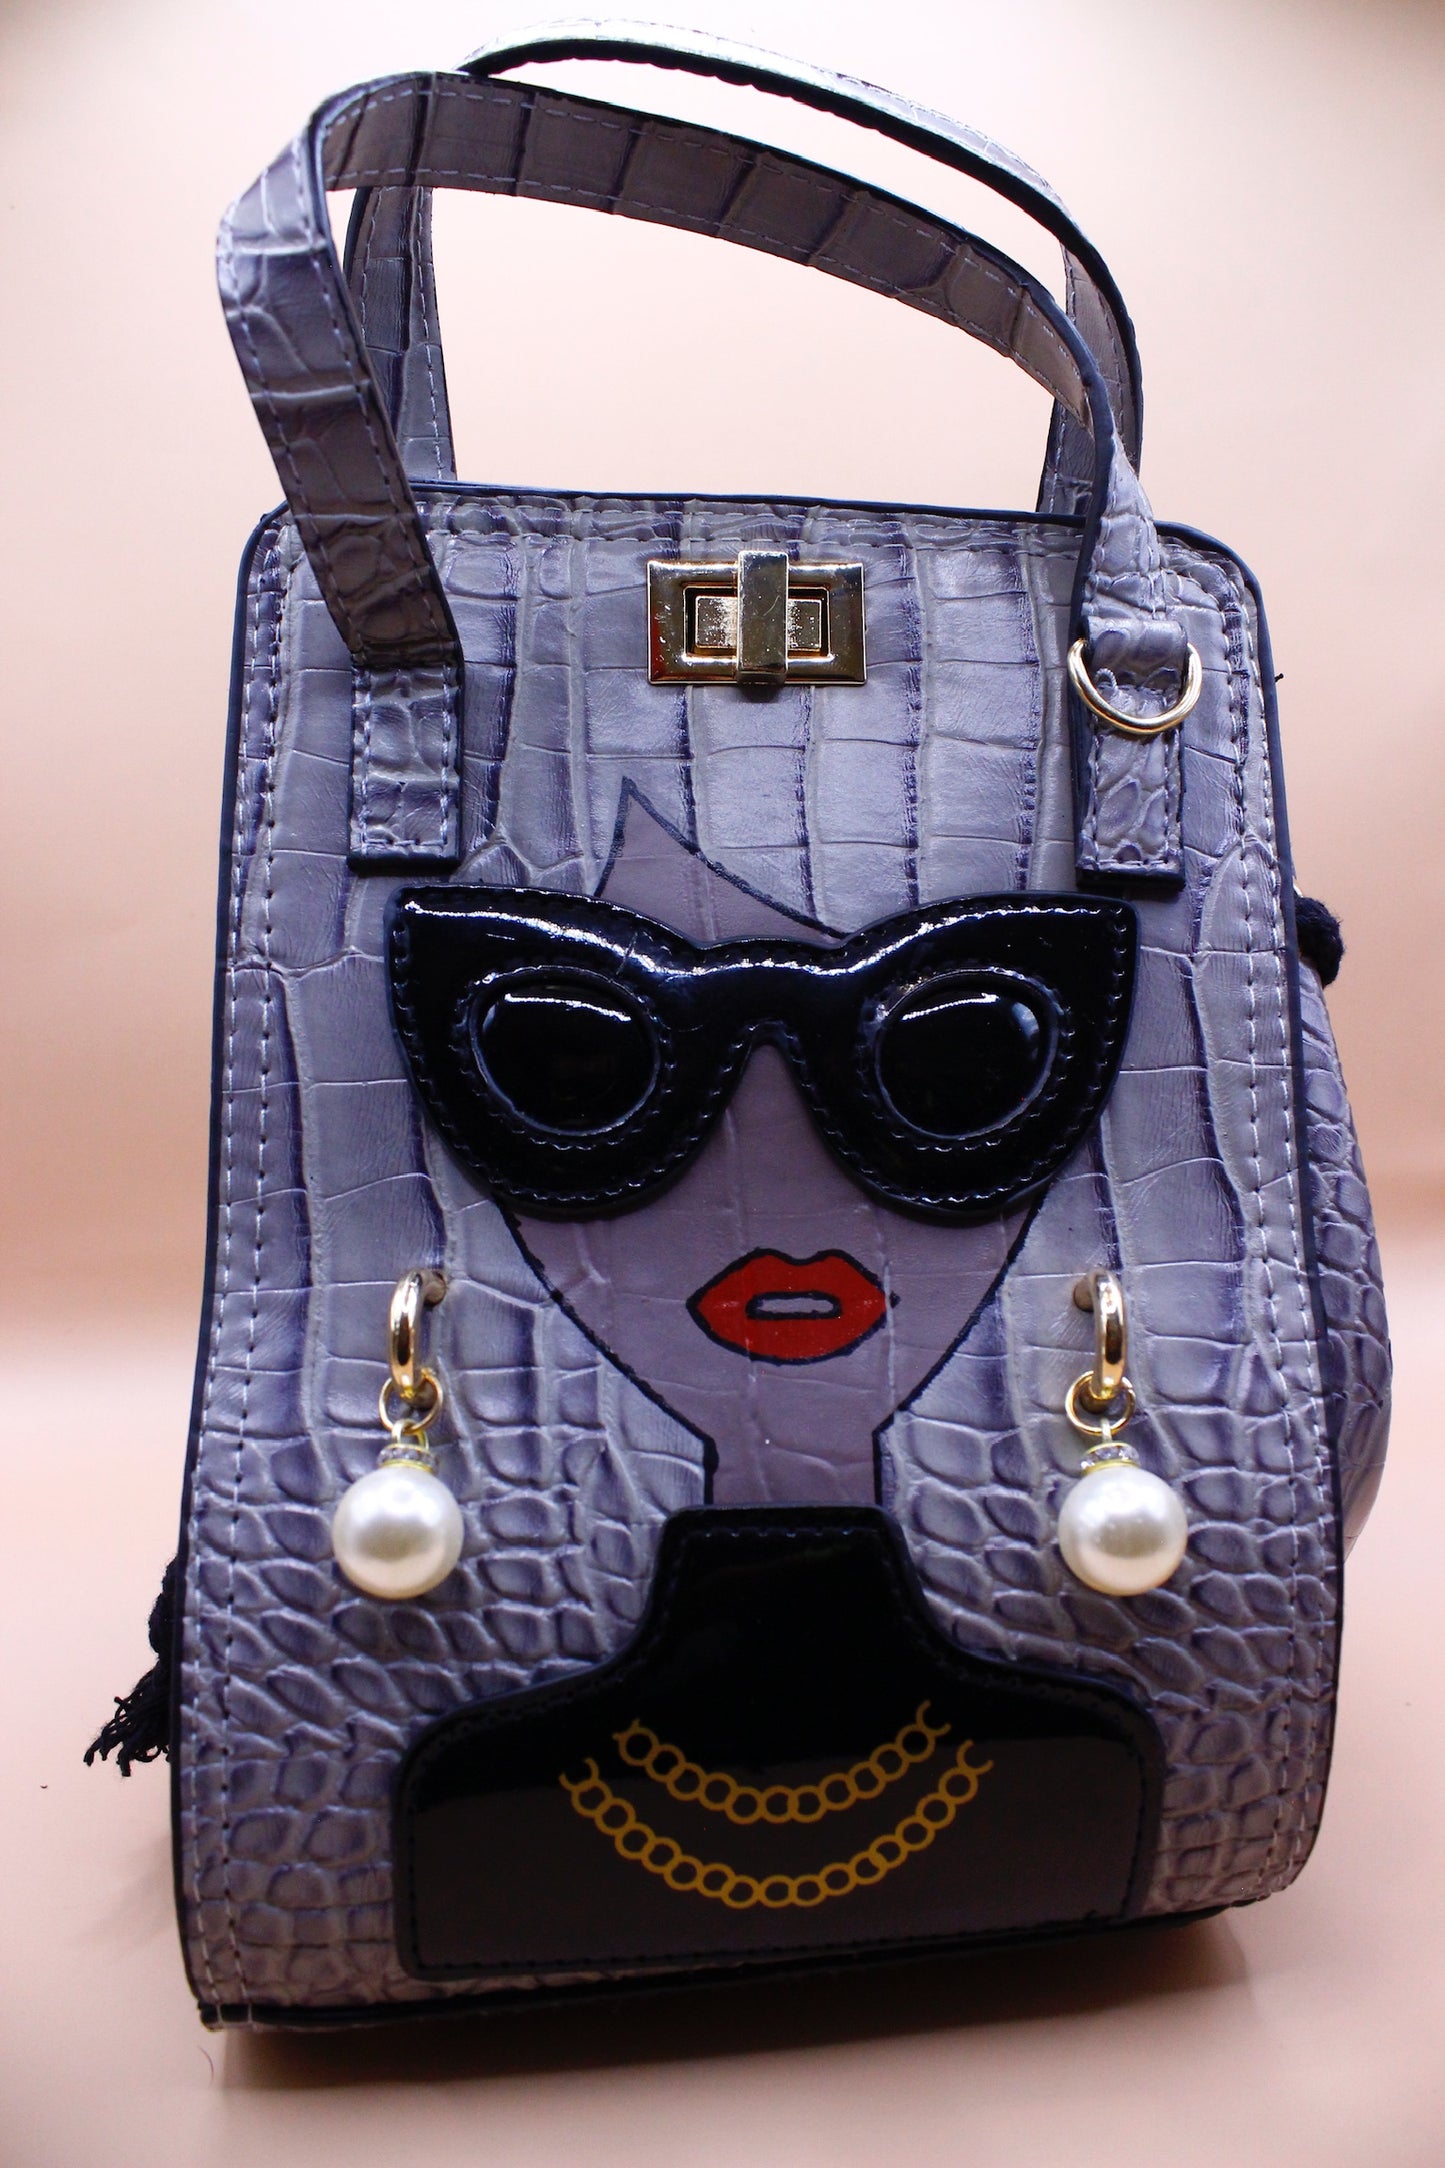 She a vibe - handbag